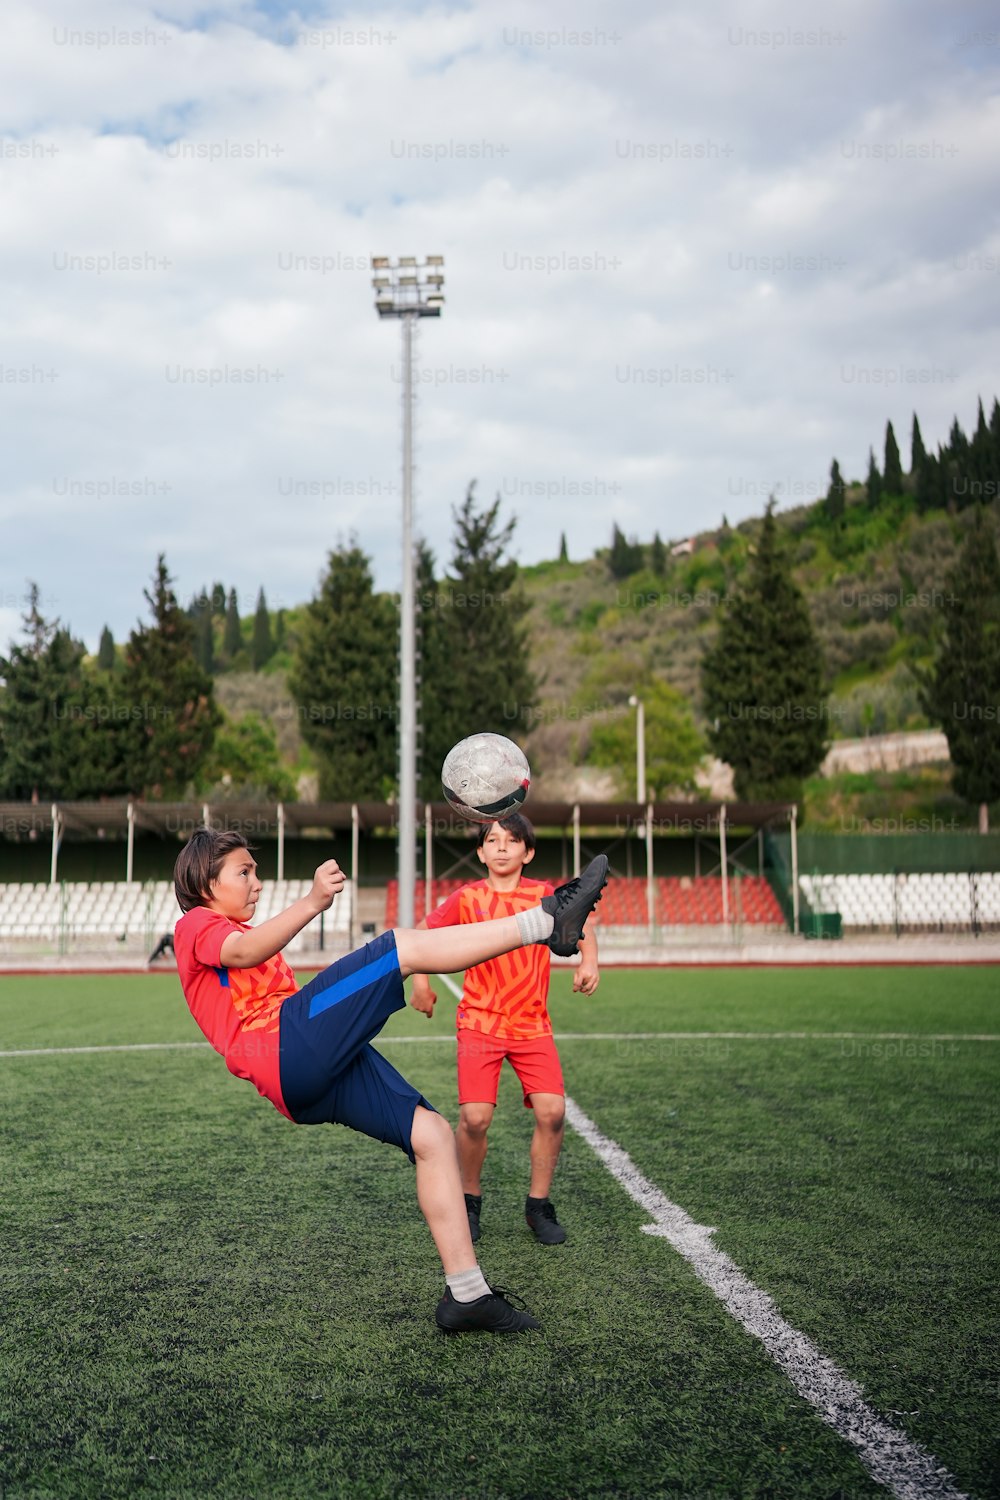 두 젊은이가 들판 위에서 축구공을 차고 있다